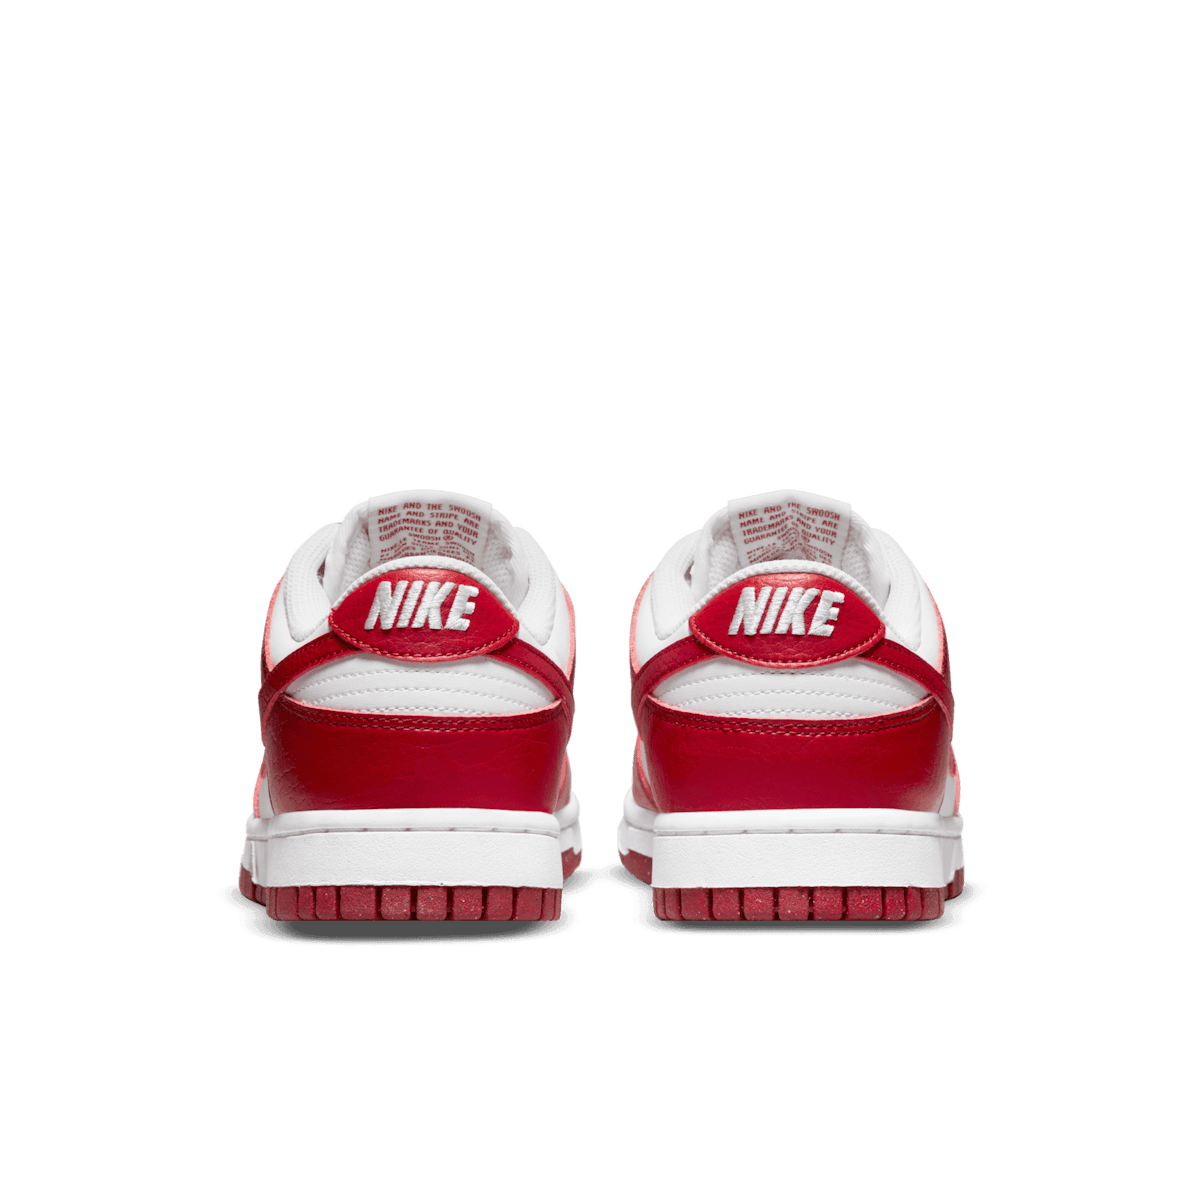 Nike Dunk Low Premium Setsubun - DQ5009-268 Raffles and Release Date